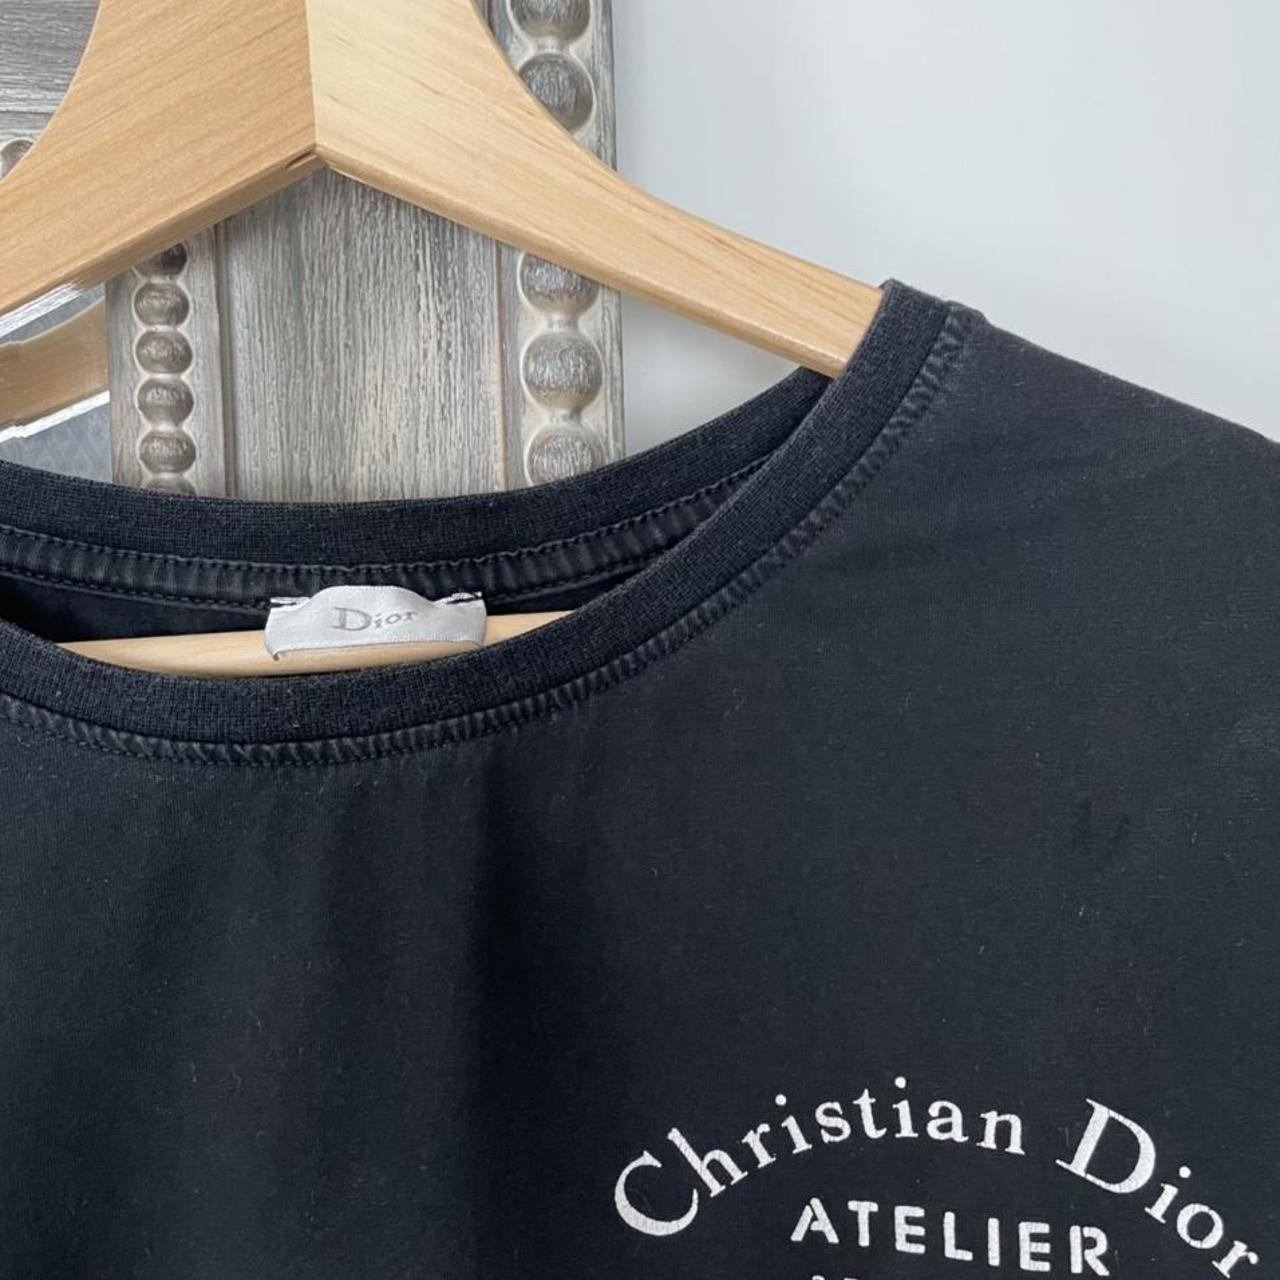 Christian Dior T-shirt. - Depop